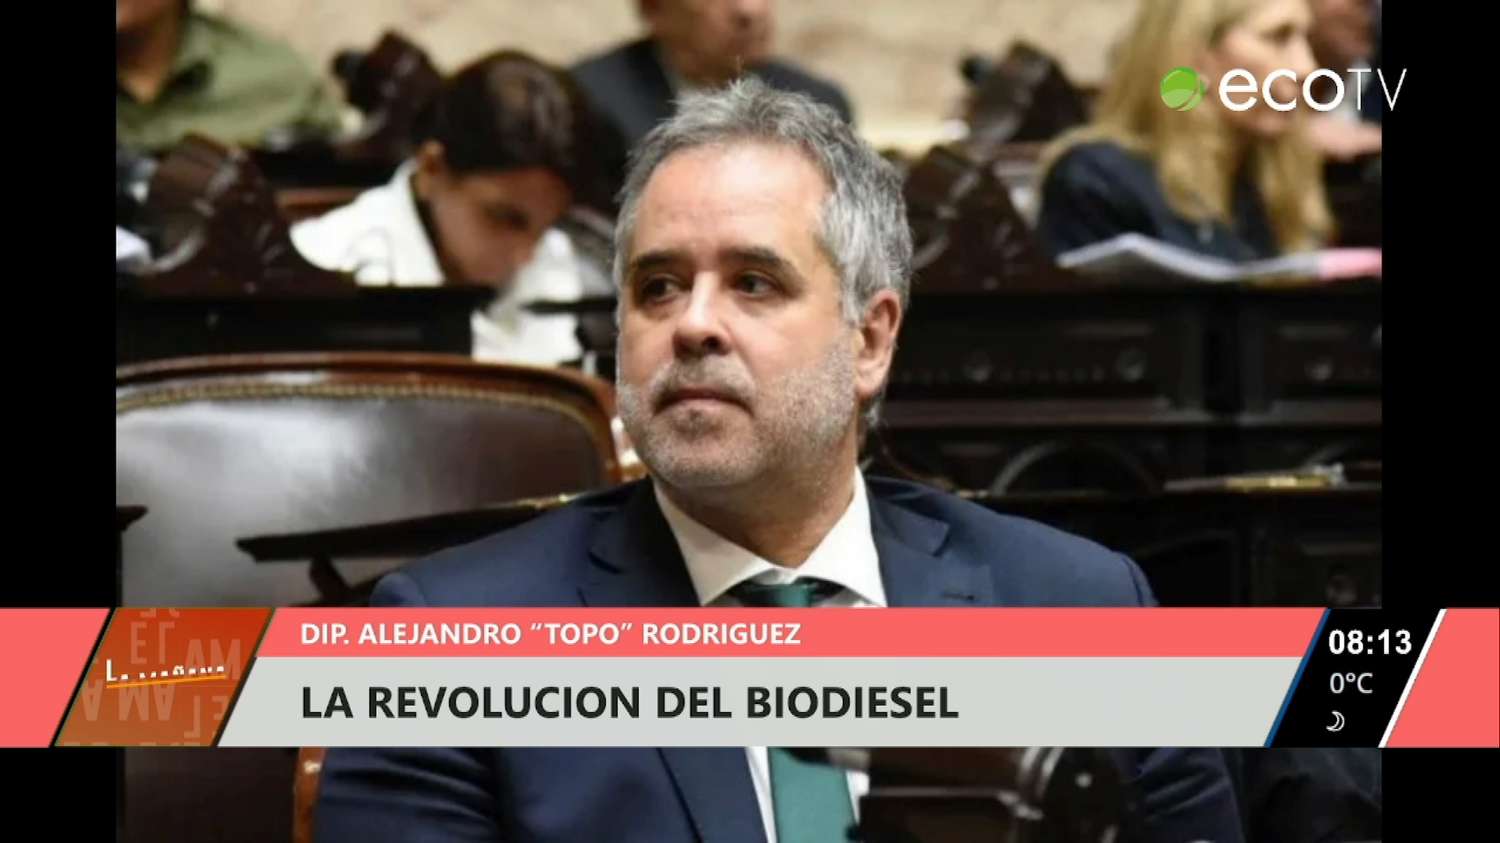 "Topo" Rodríguez propuso la revolución del biodiesel